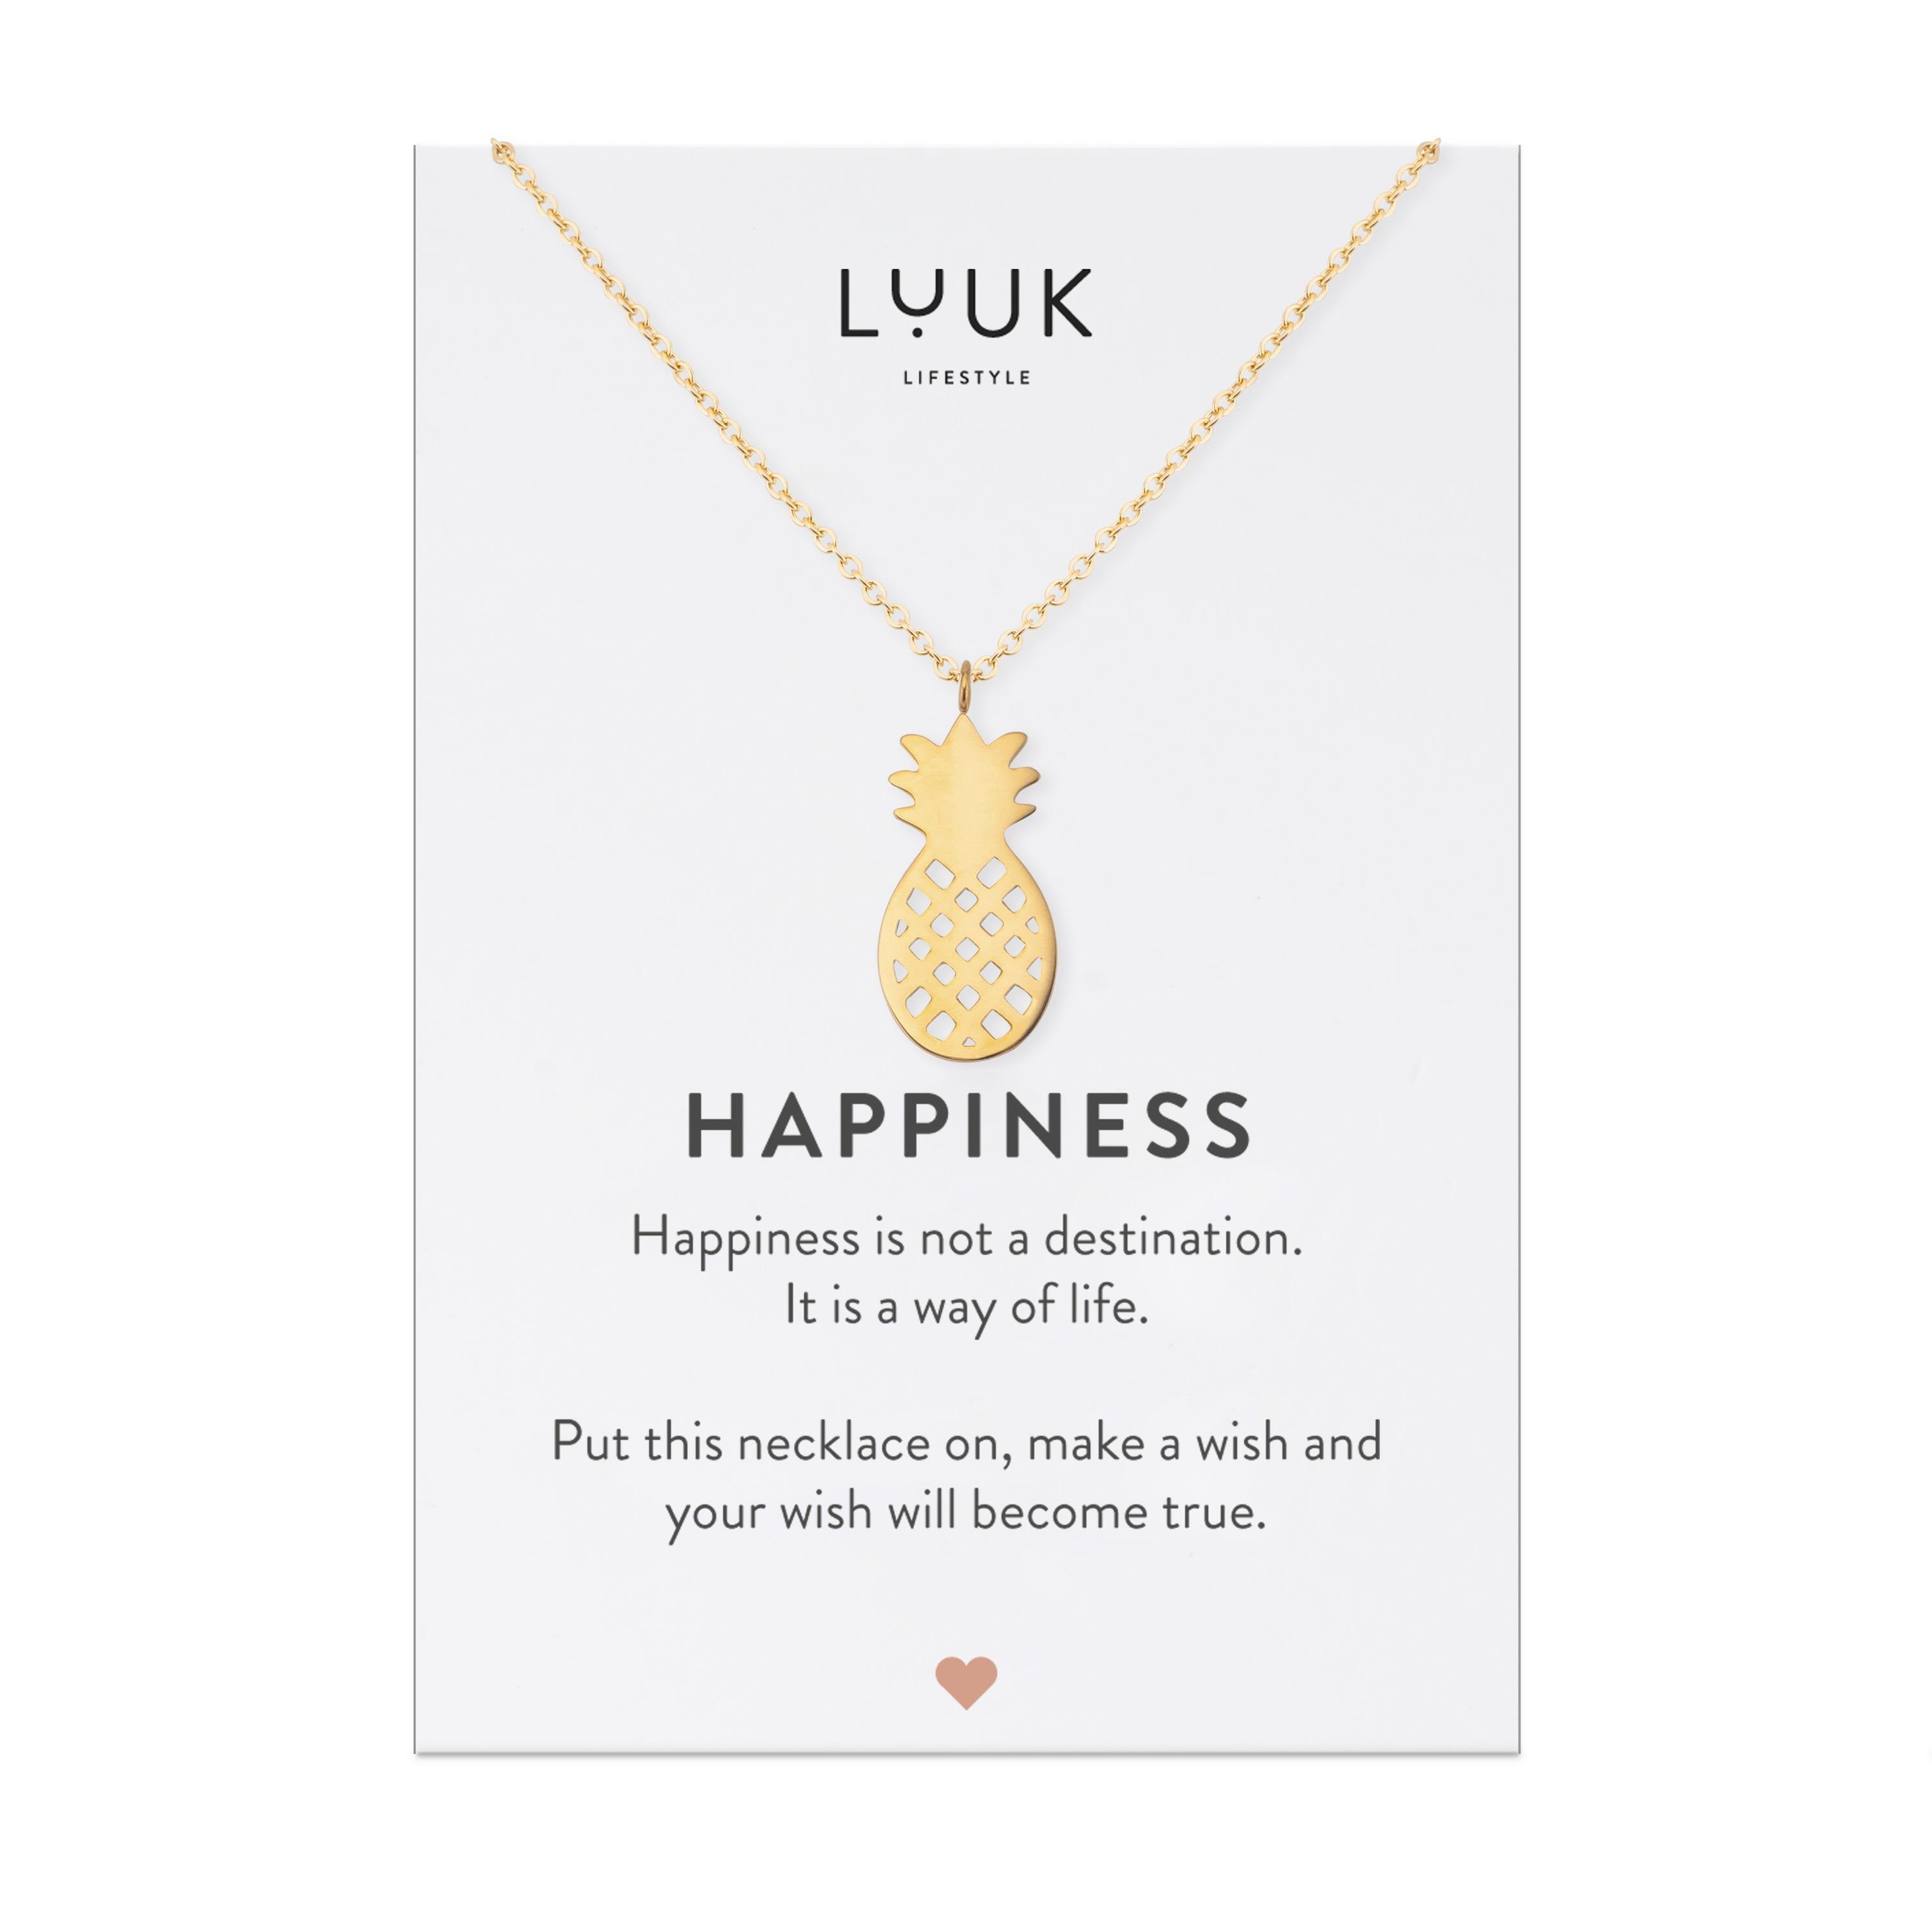 LUUK LIFESTYLE Kette mit Anhänger Ananas, HAPPINESS Geschenkkarte für Frauen, Festivalschmuck Gold